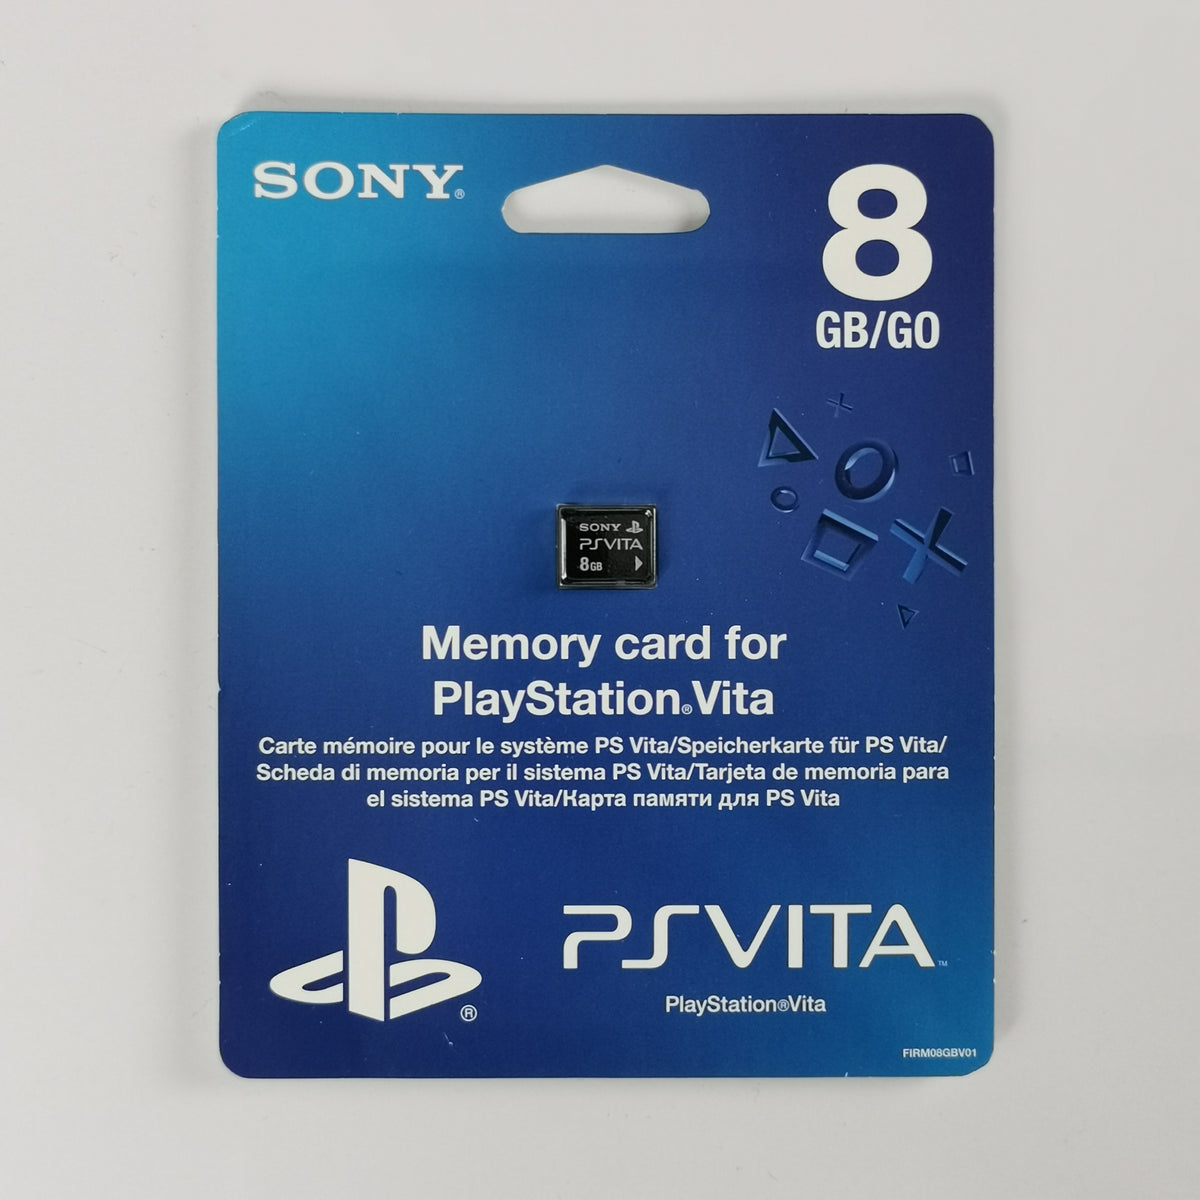 PS Vita Speicherkarte (8 GB) [PSV]